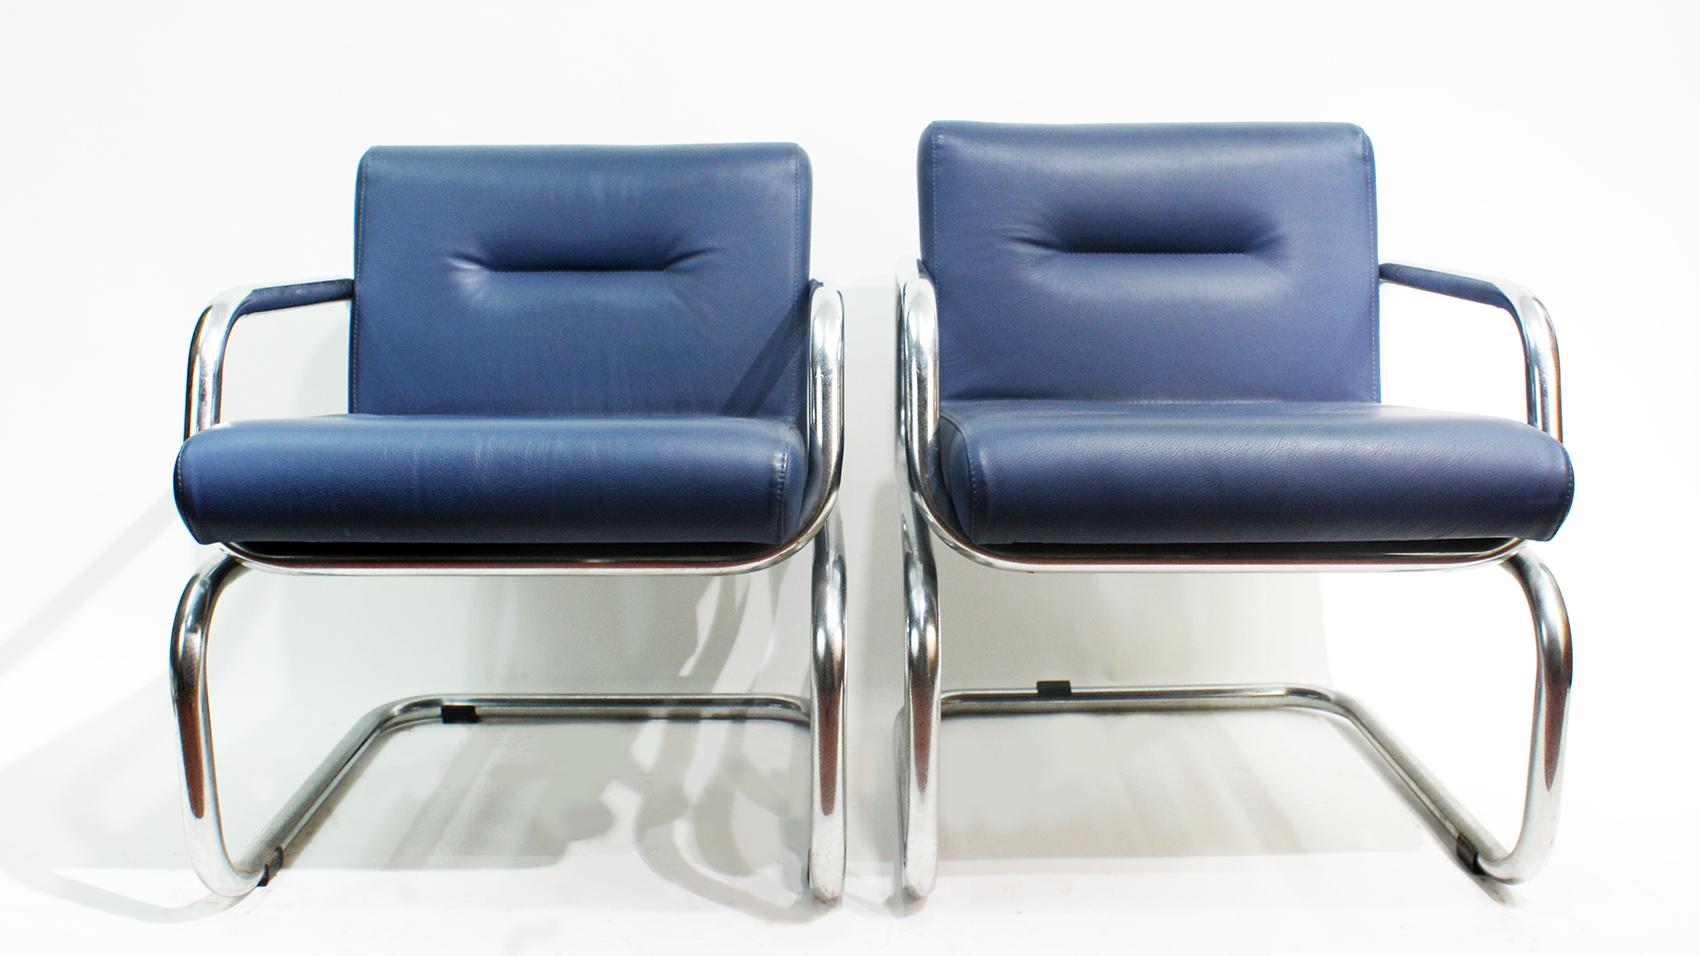 Paire de chaises longues bleu nuit de style Bauhaus sur une base cantilever en tube d'acier chromé, fabriquées par Thonet en 1980.
Re-tapissé dans un cuir bleu nuit pour les sièges et les dossiers.

  